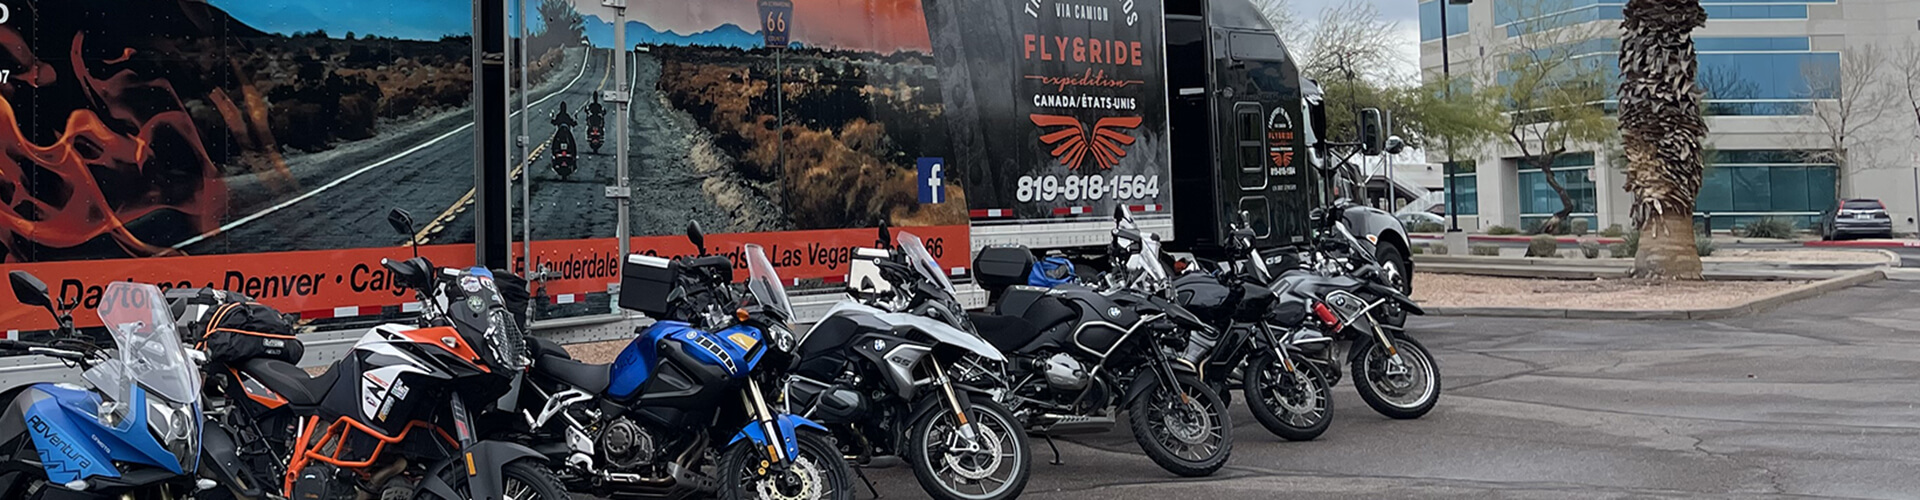 Découvrez Fly & Ride Voyages : la toute première agence de voyages à moto en Amérique du Nord